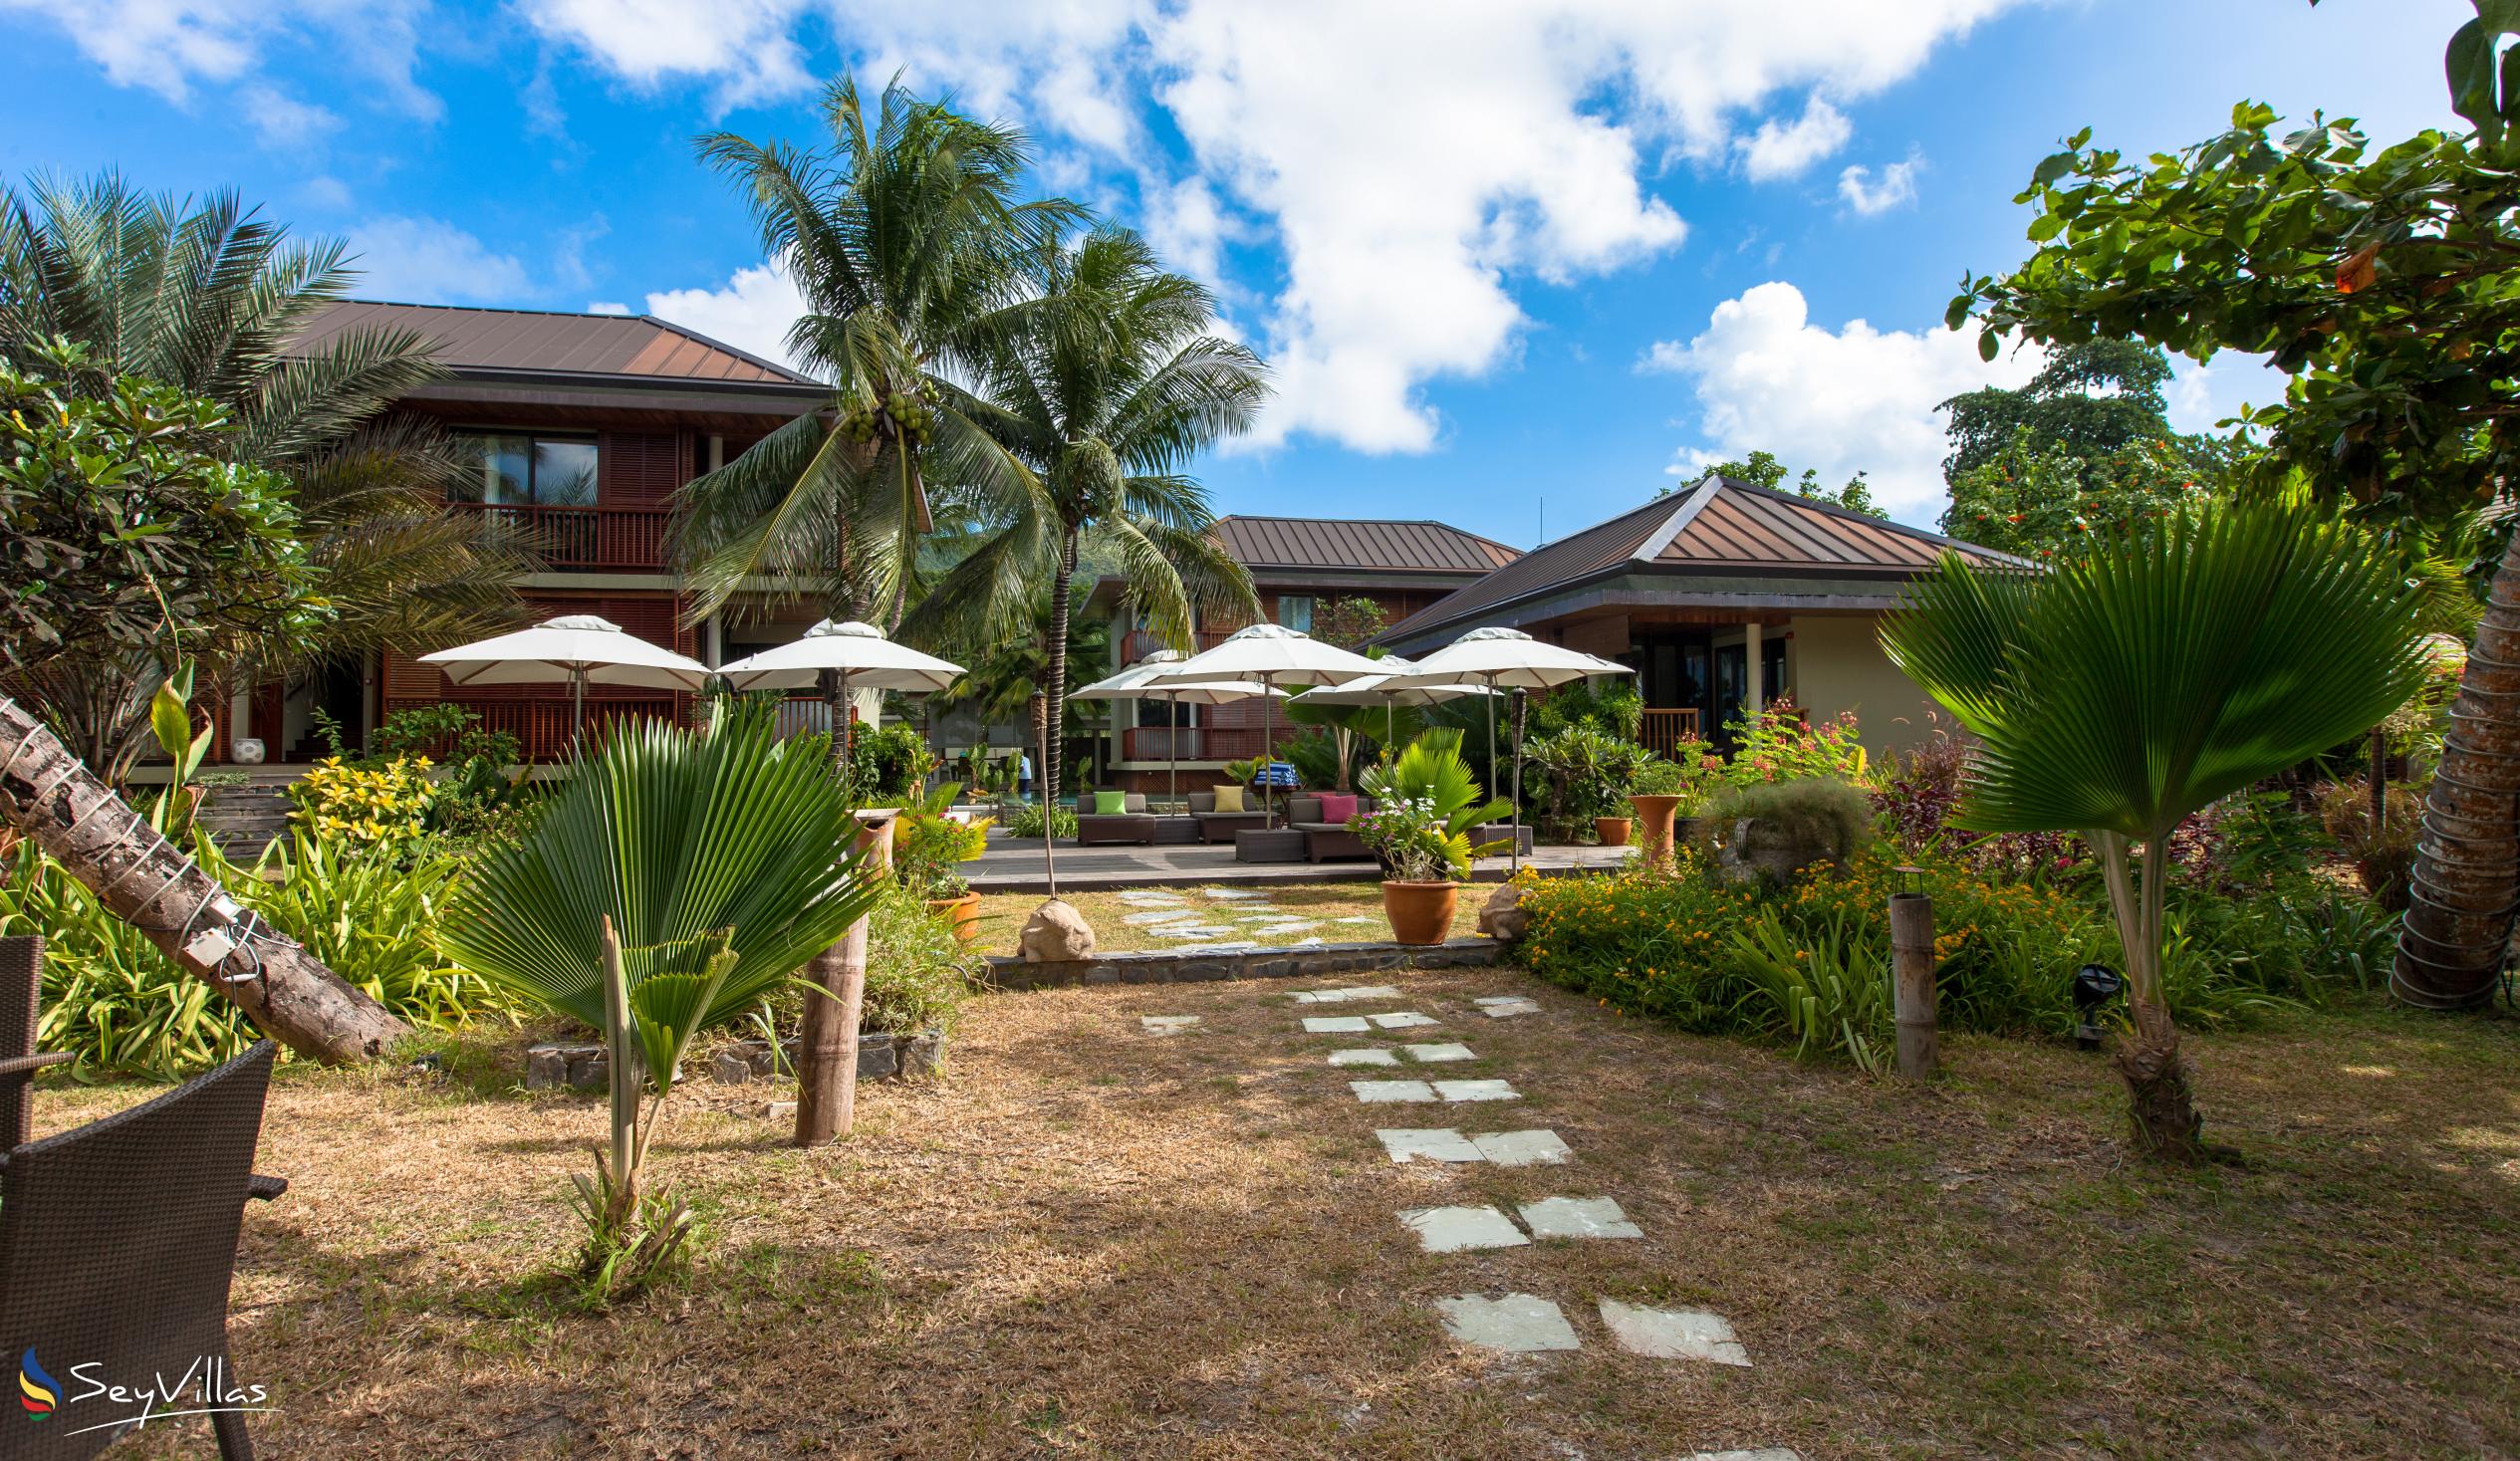 Foto 2: Dhevatara Beach Hotel - Aussenbereich - Praslin (Seychellen)